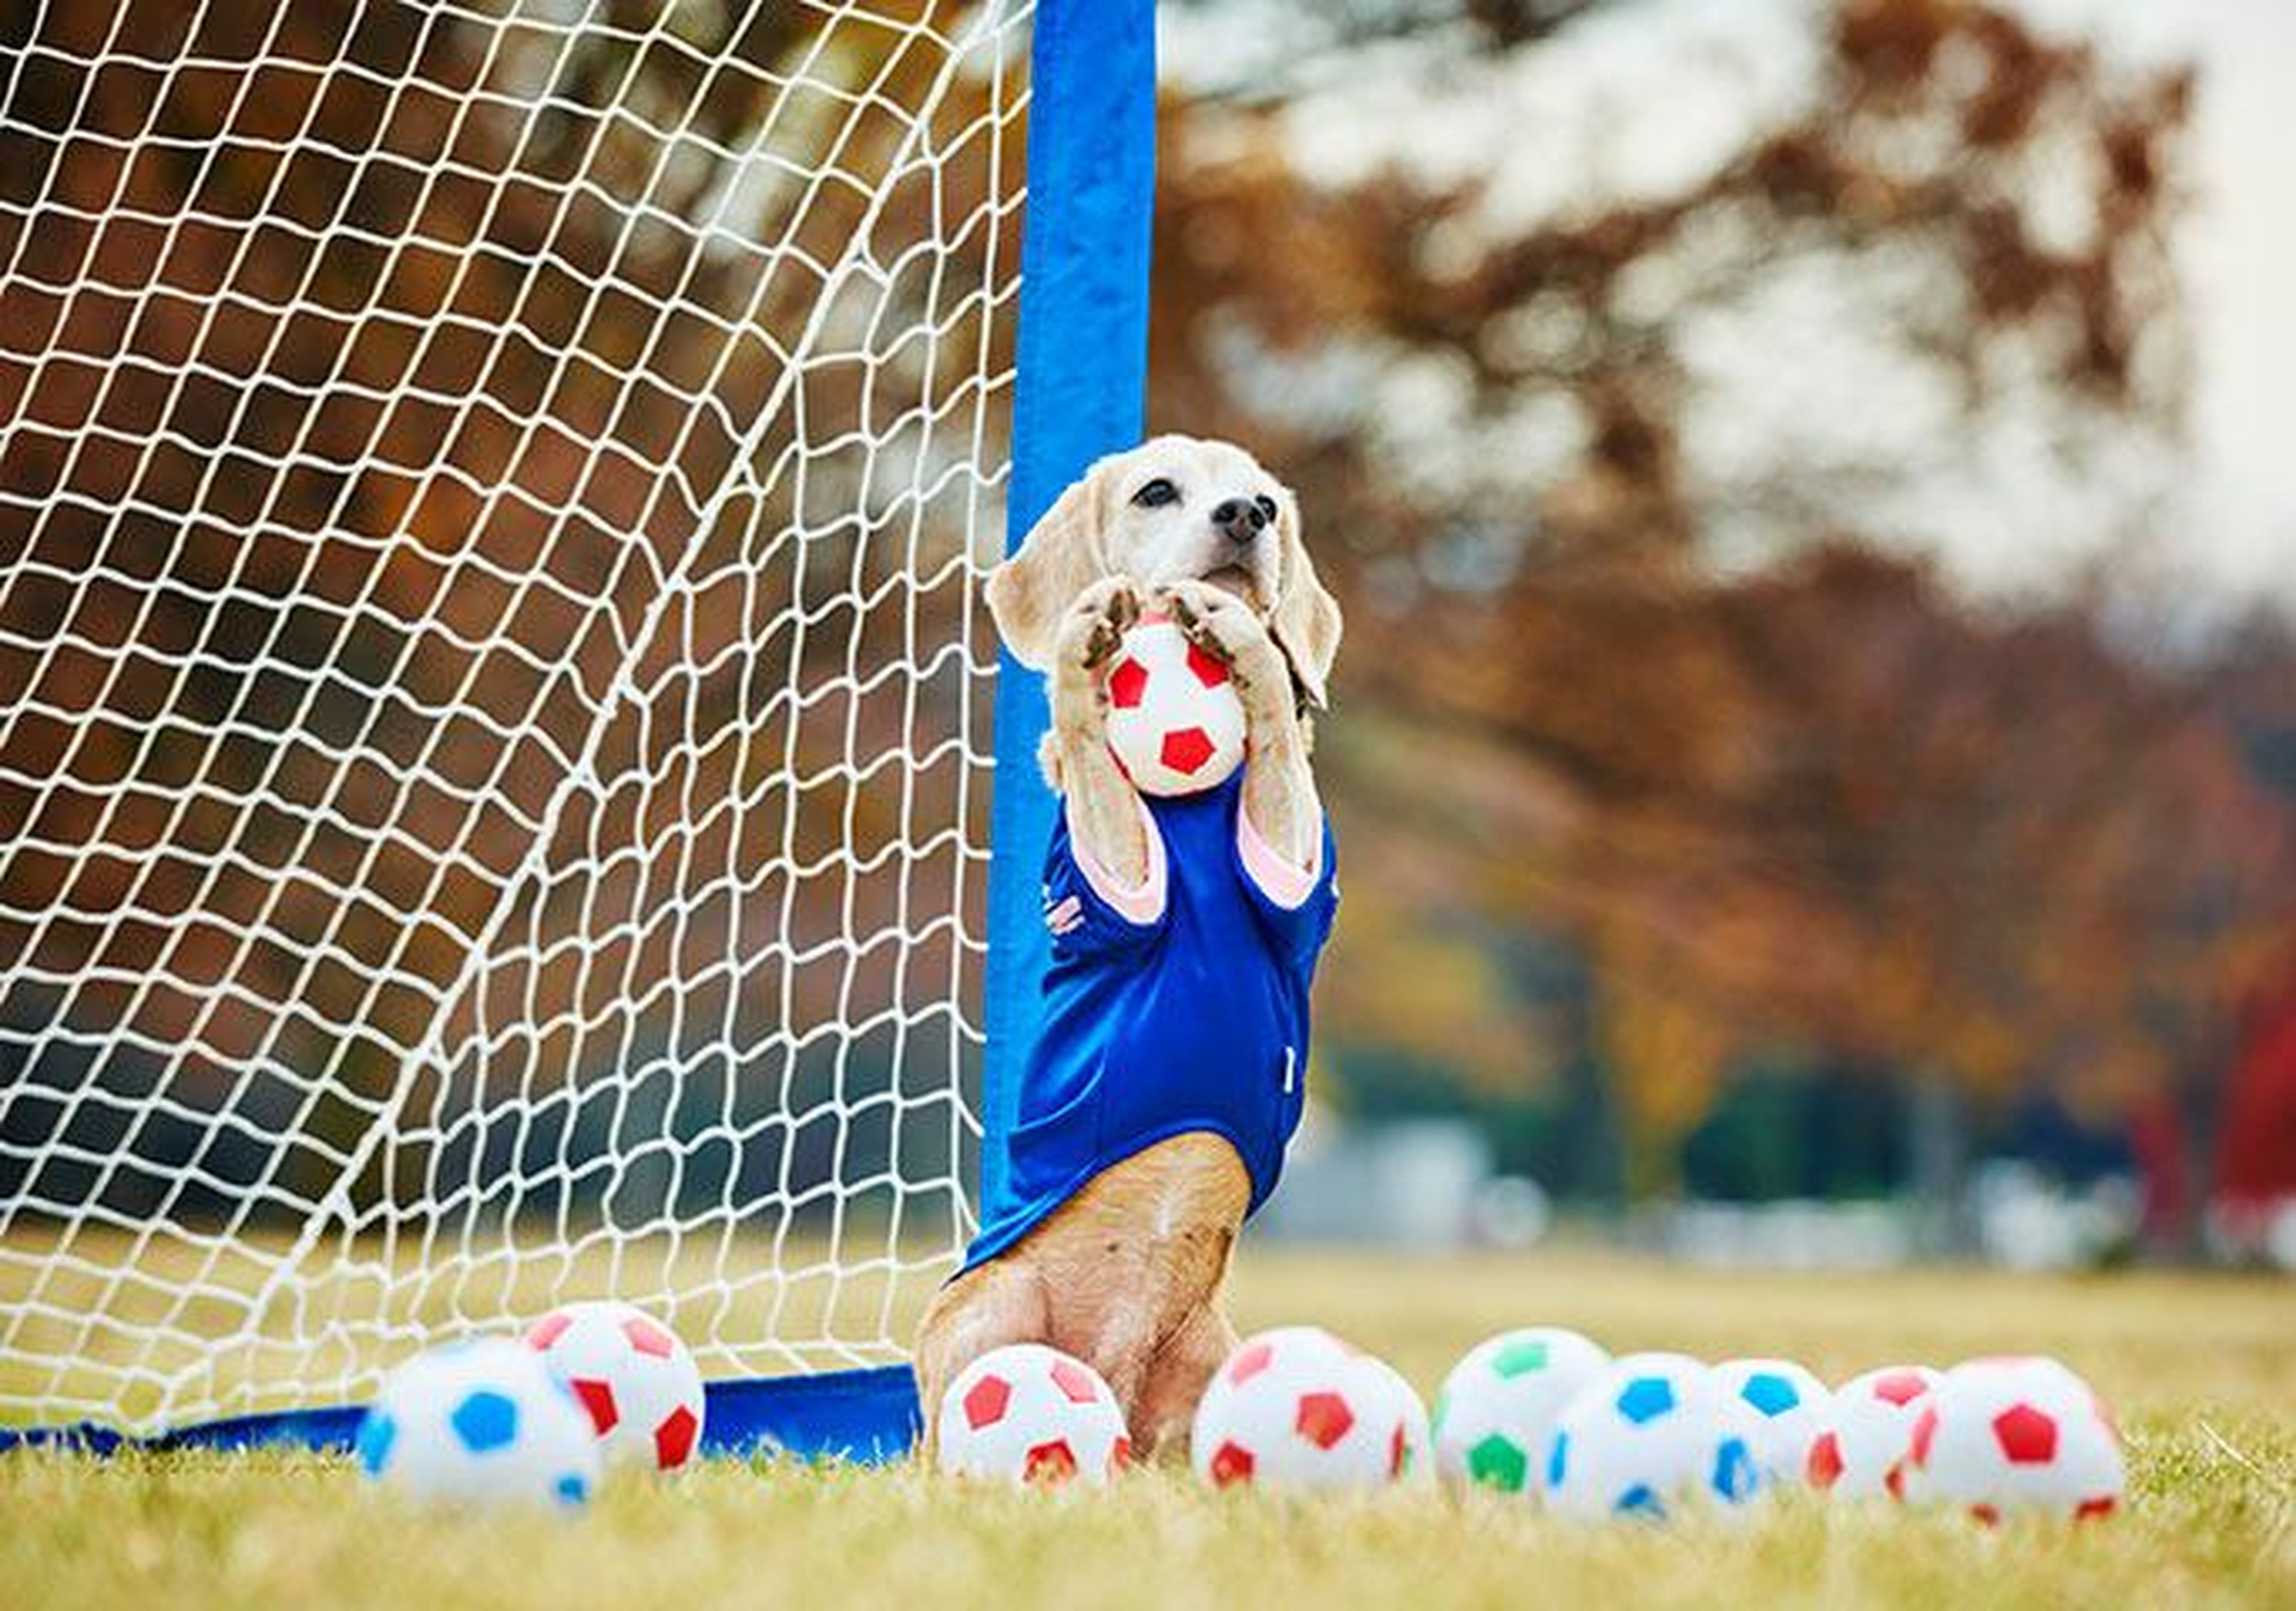 Purin el beagle atrapó 14 mini balones de fútbol en un minuto.